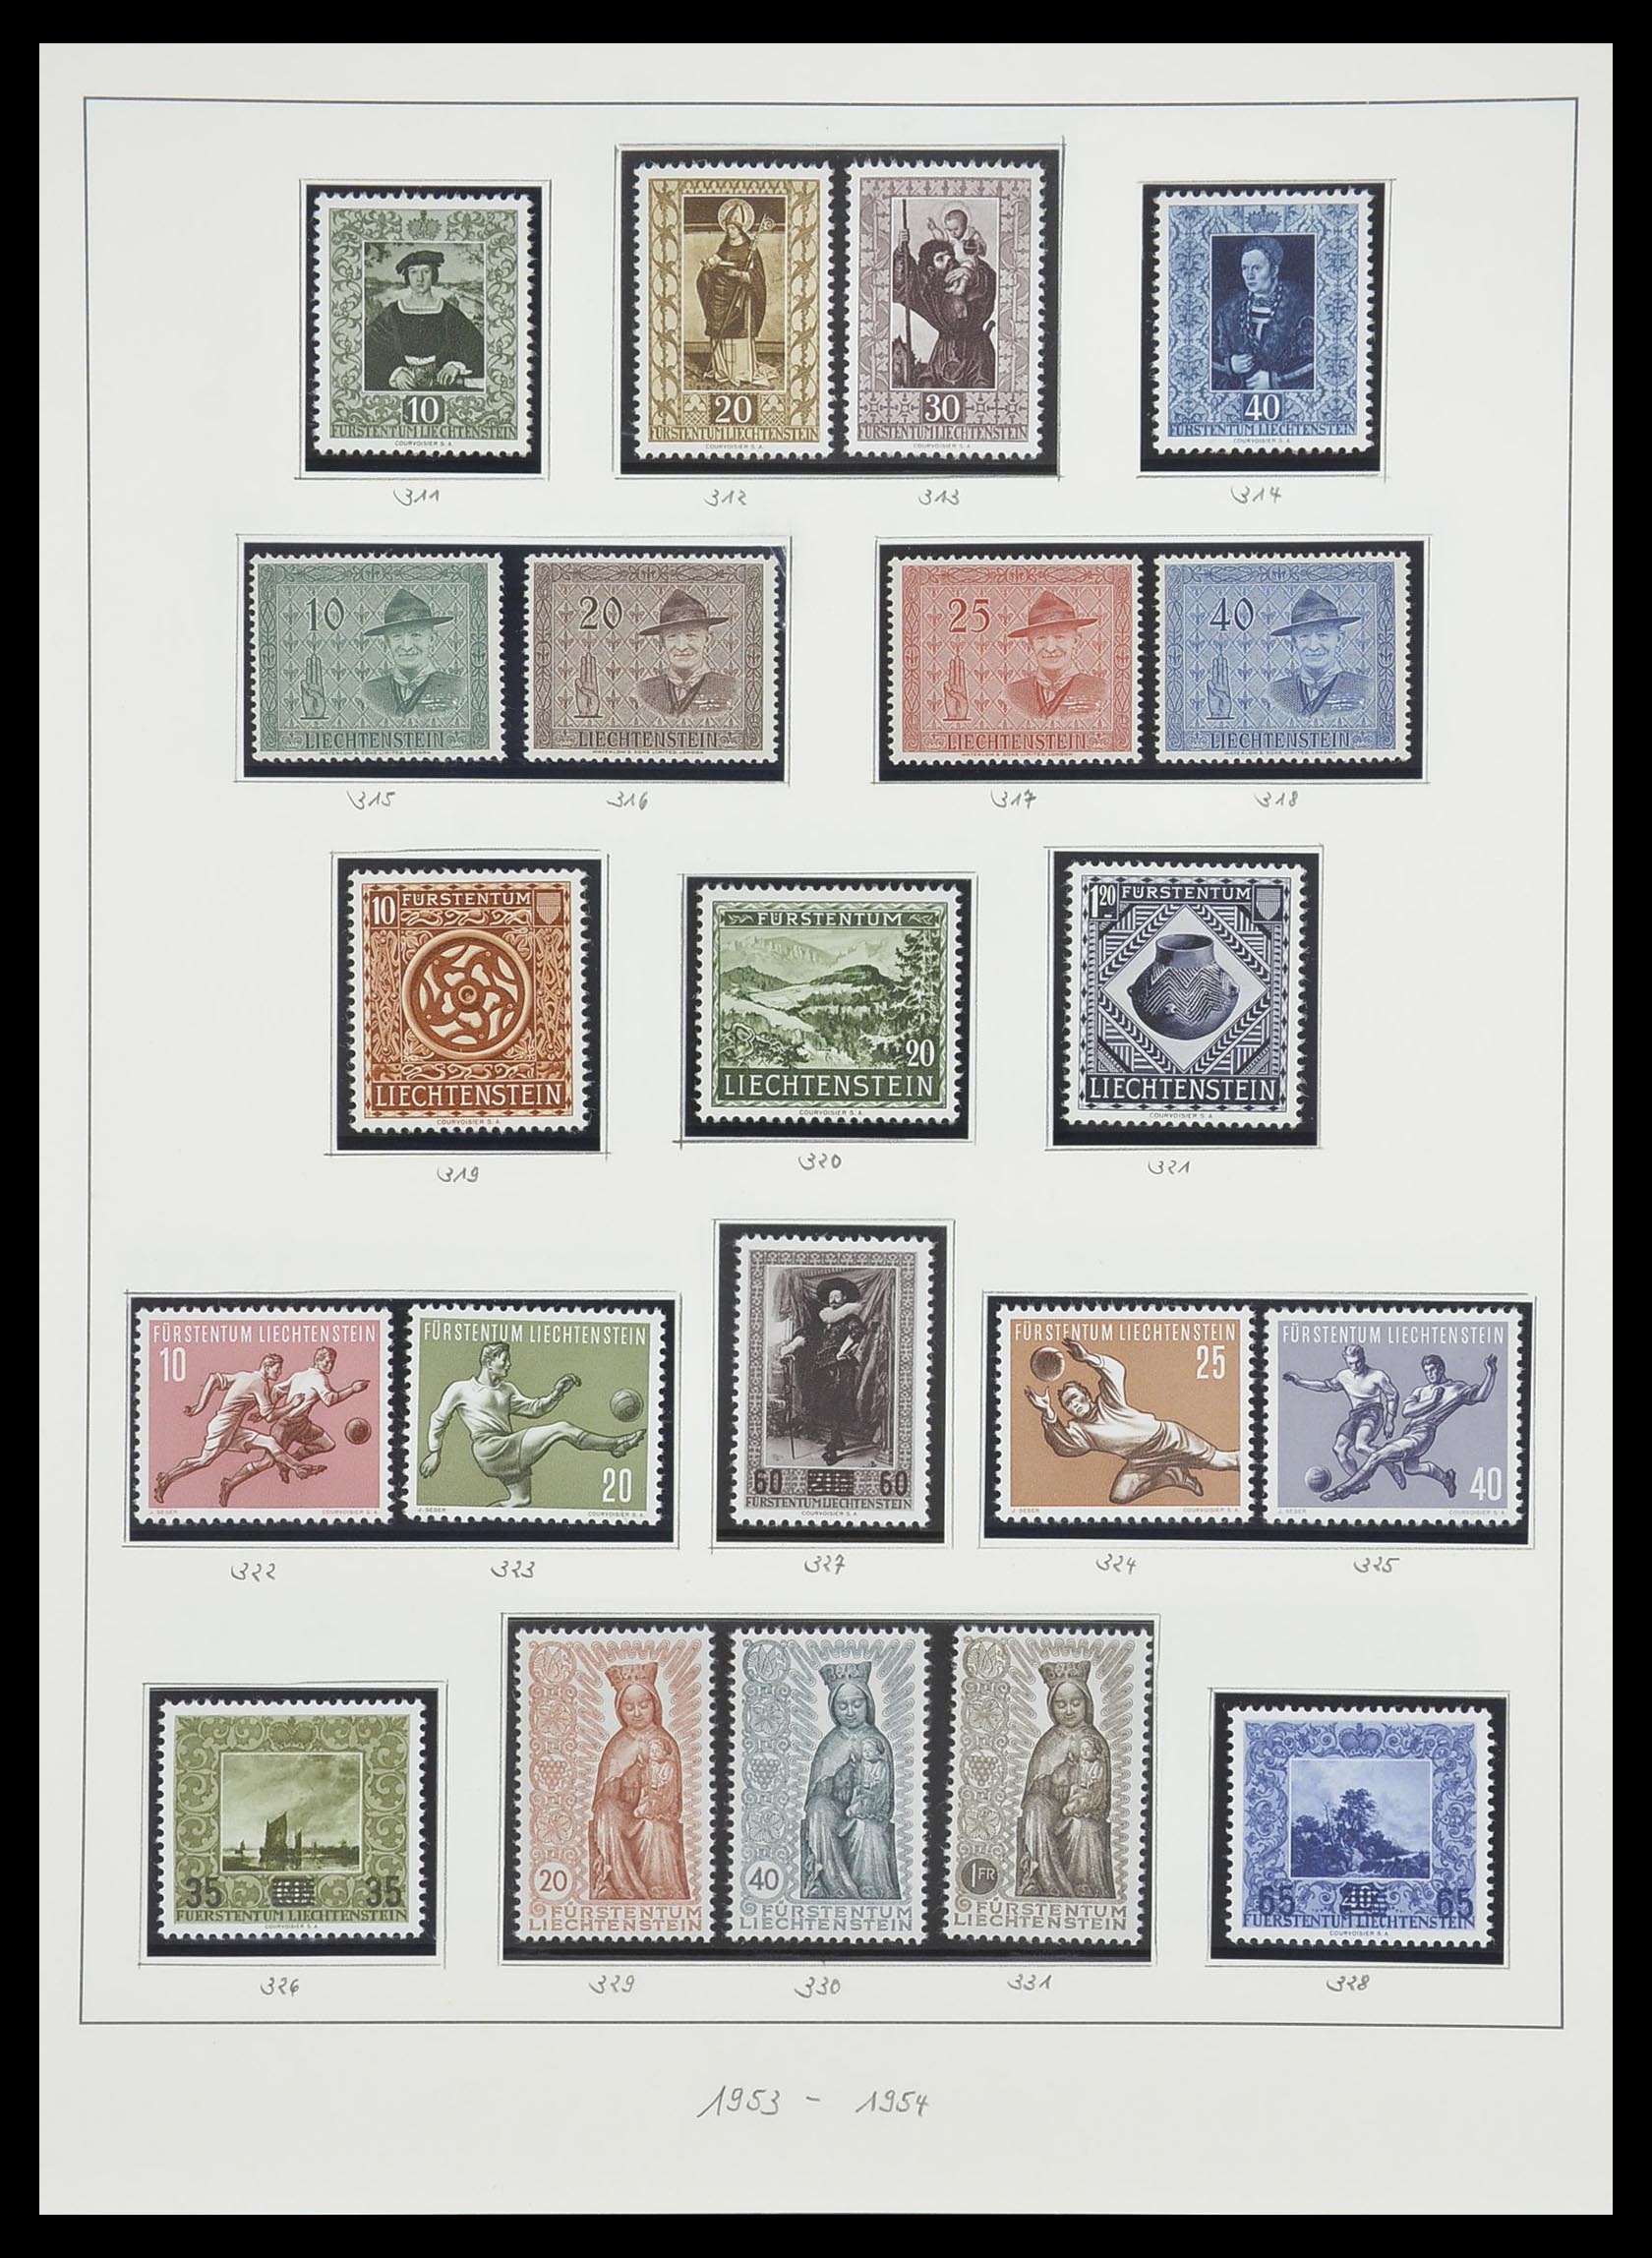 33493 054 - Stamp collection 33493 Liechtenstein 1912-2008.